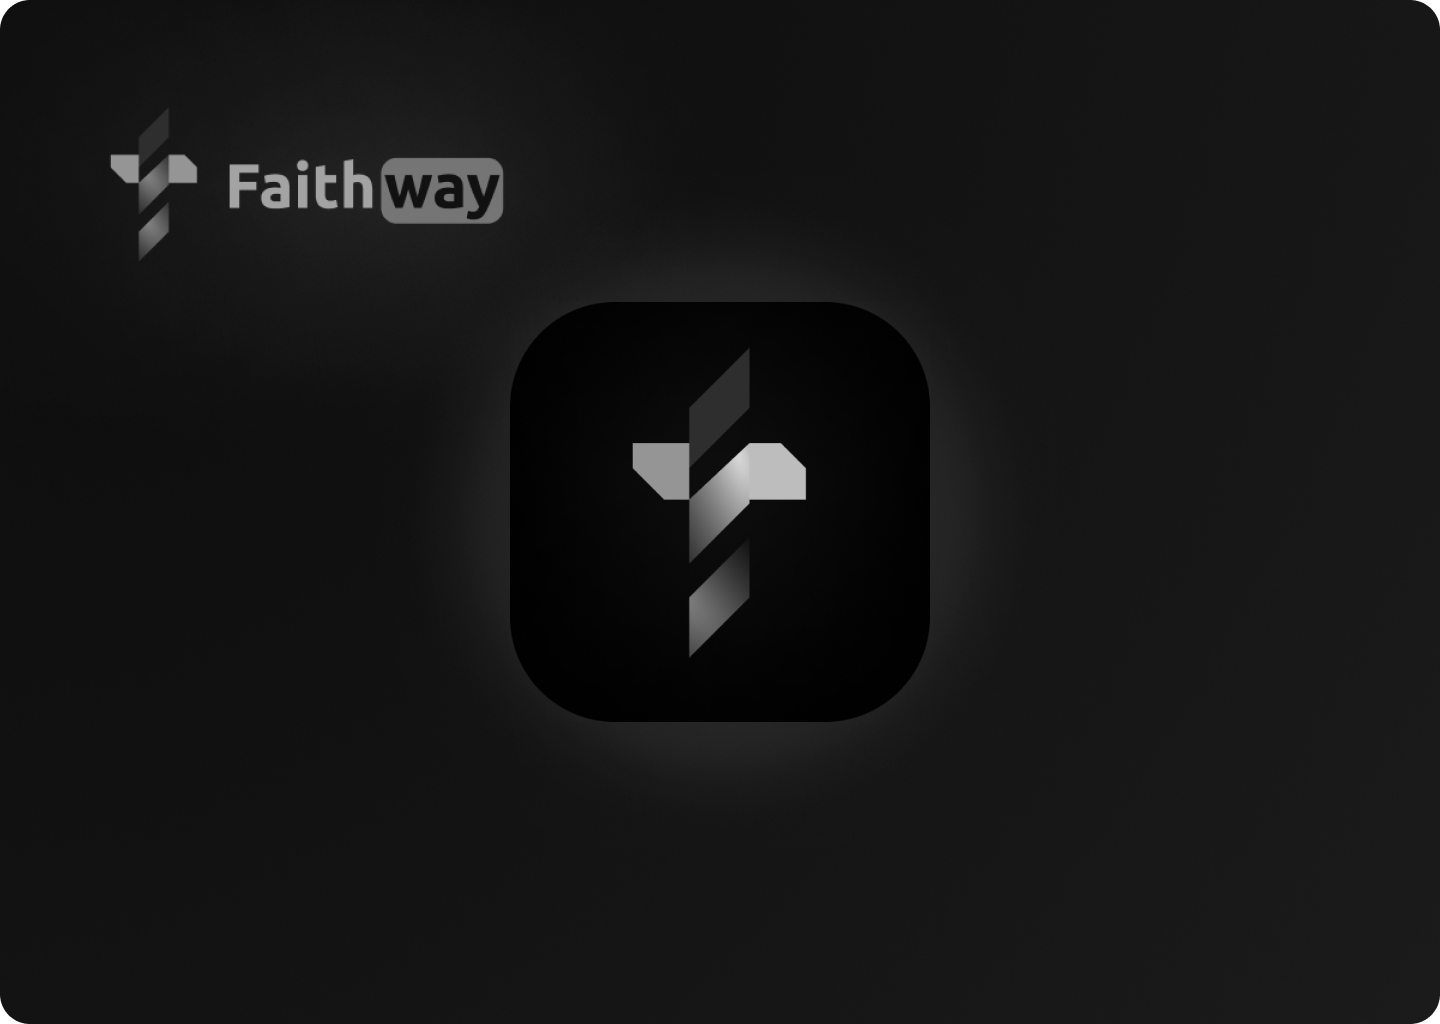 Faithway